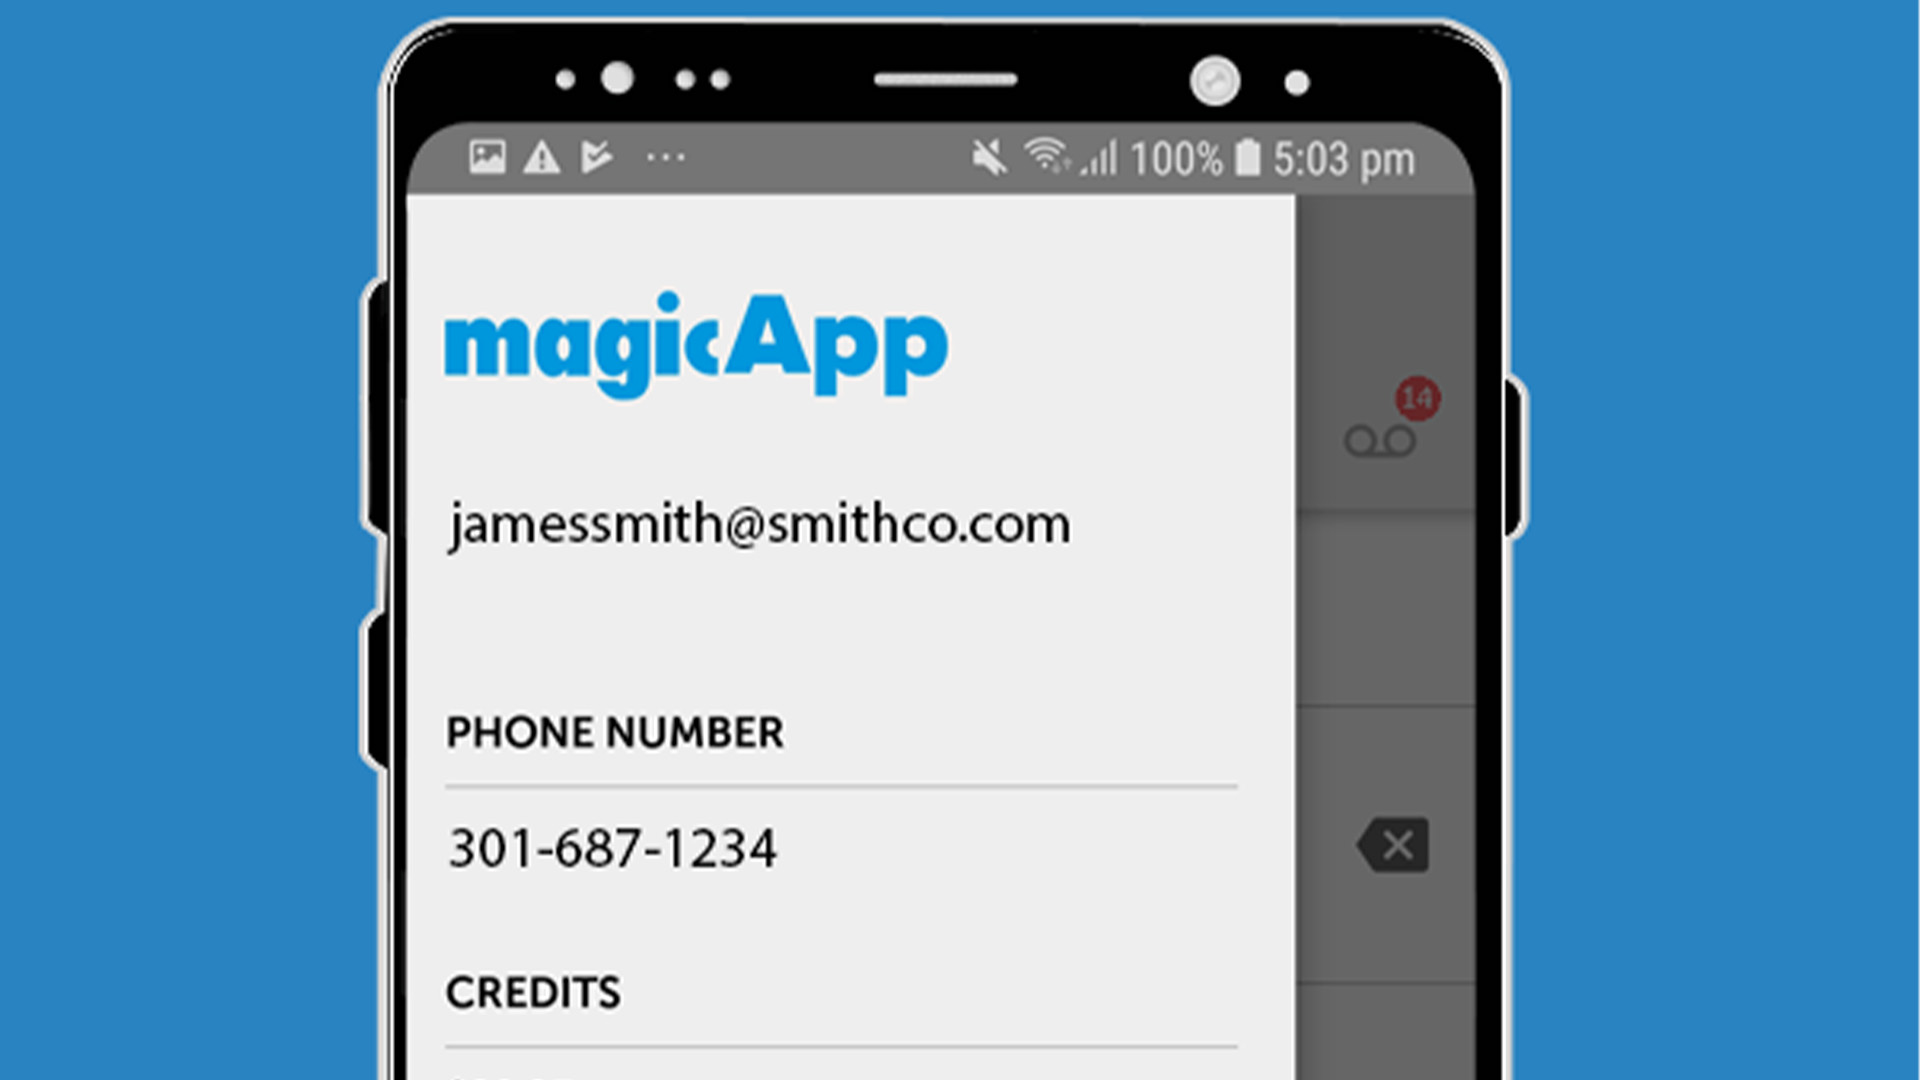 magicApp screenshot 2020